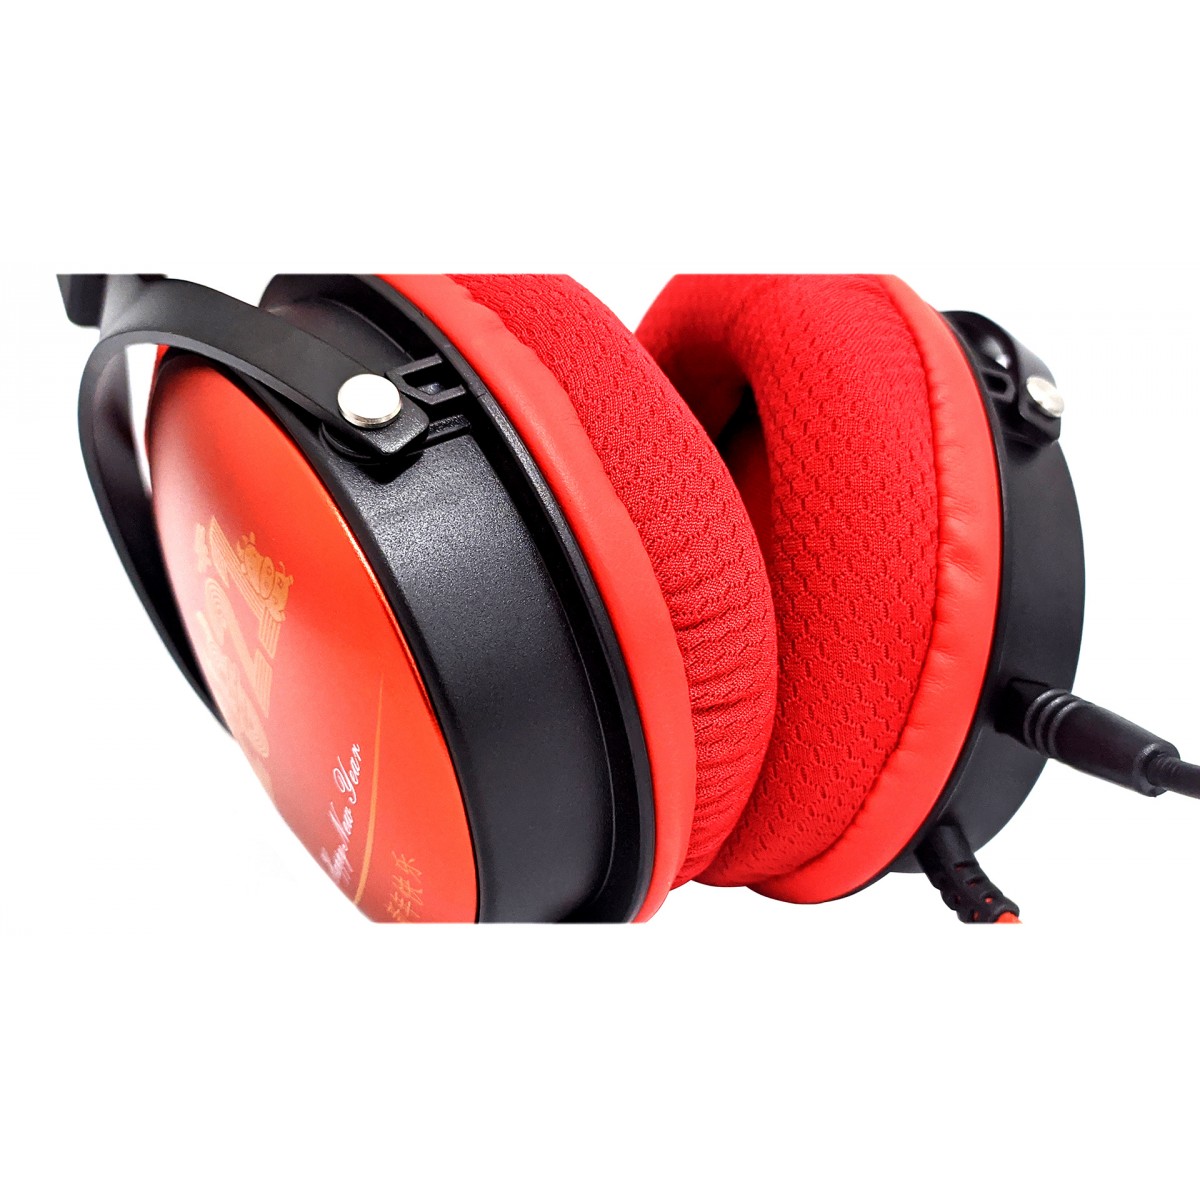 Headset Gamer Havit H2010D, 3.5mm, Black-Red, HV-H2010D SPECIAL EDITION